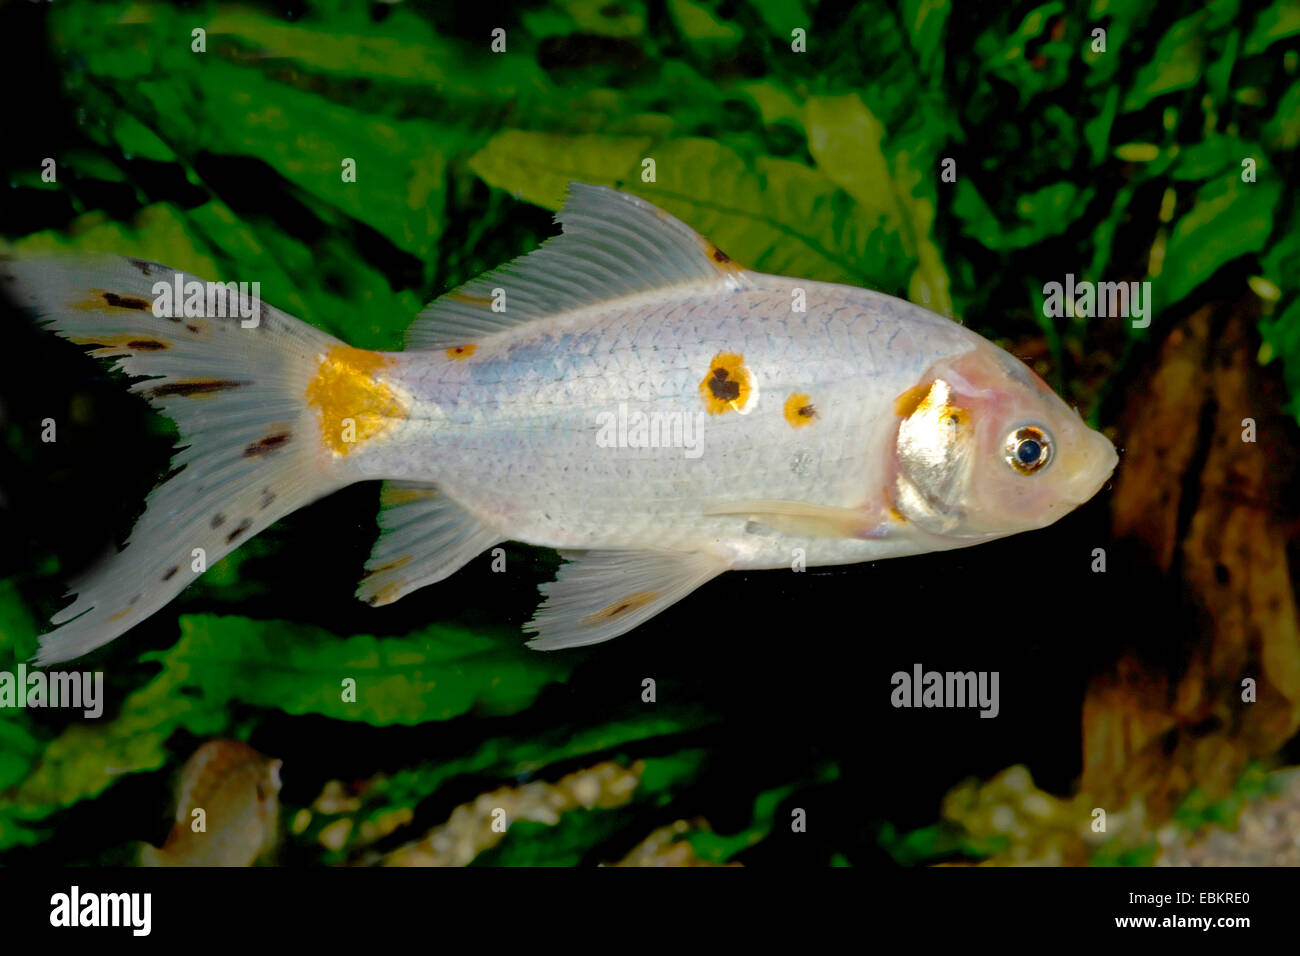 Goldfish, Common carp, Shubunkin (Carassius auratus), breeding form Shubunkin Stock Photo